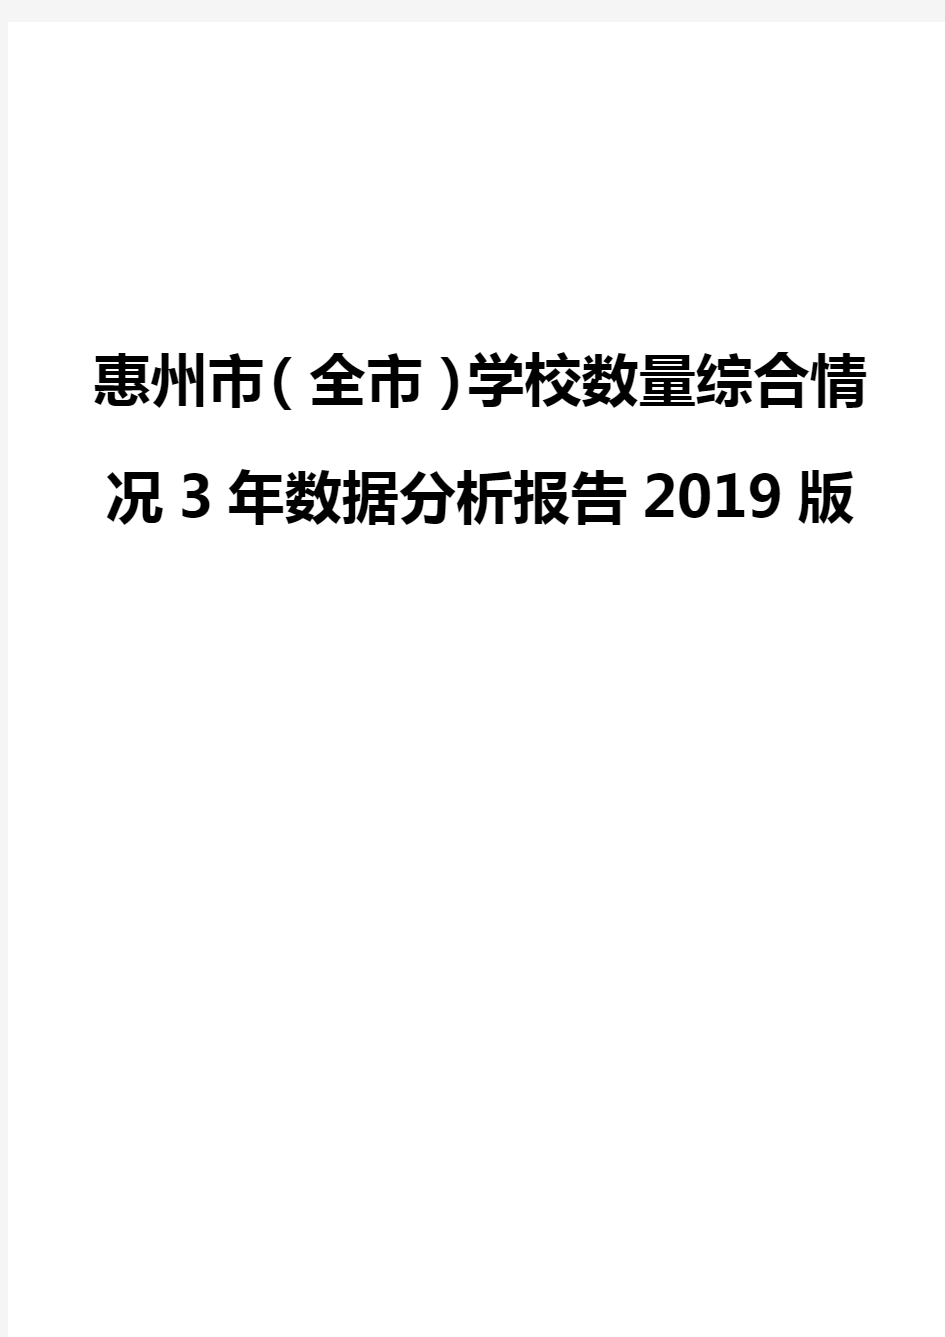 惠州市(全市)学校数量综合情况3年数据分析报告2019版